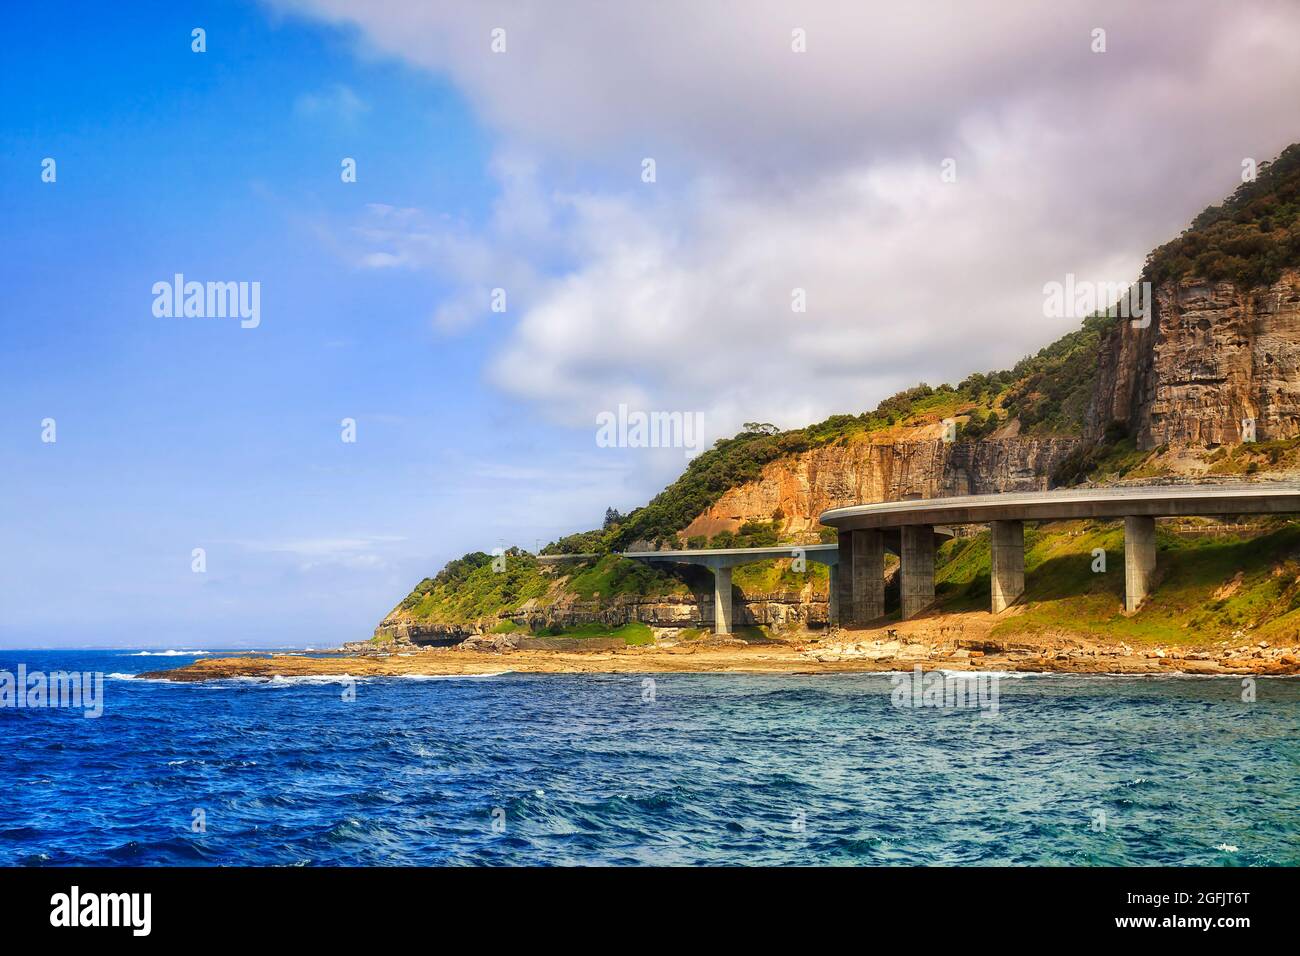 Le Grand Pacific conduit Sea Cliff Bridge autour des rochers de grès sur la côte Pacifique de l'Australie. Banque D'Images